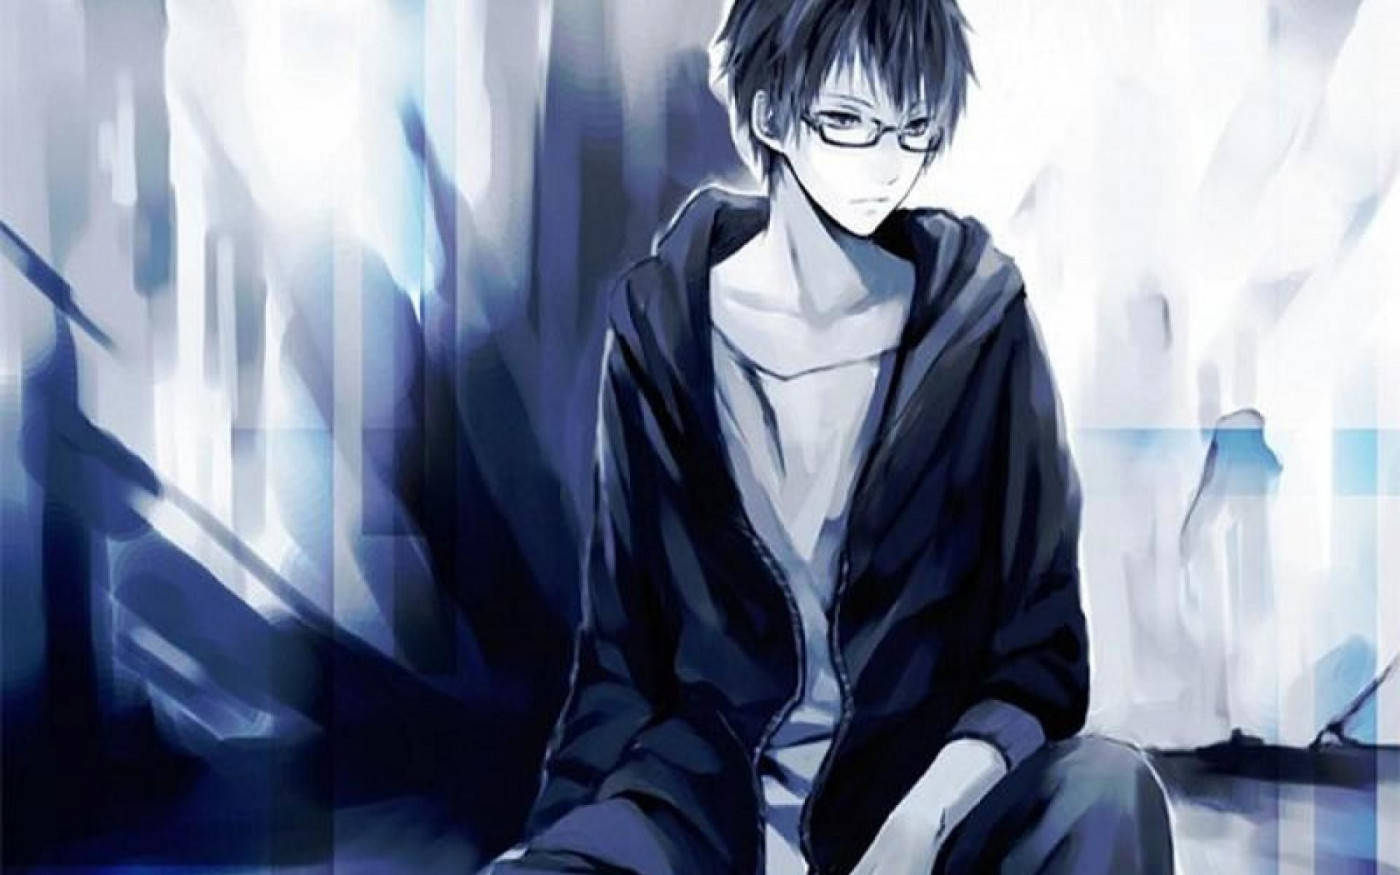 Melancholic Anime Blue Boy Wallpaper